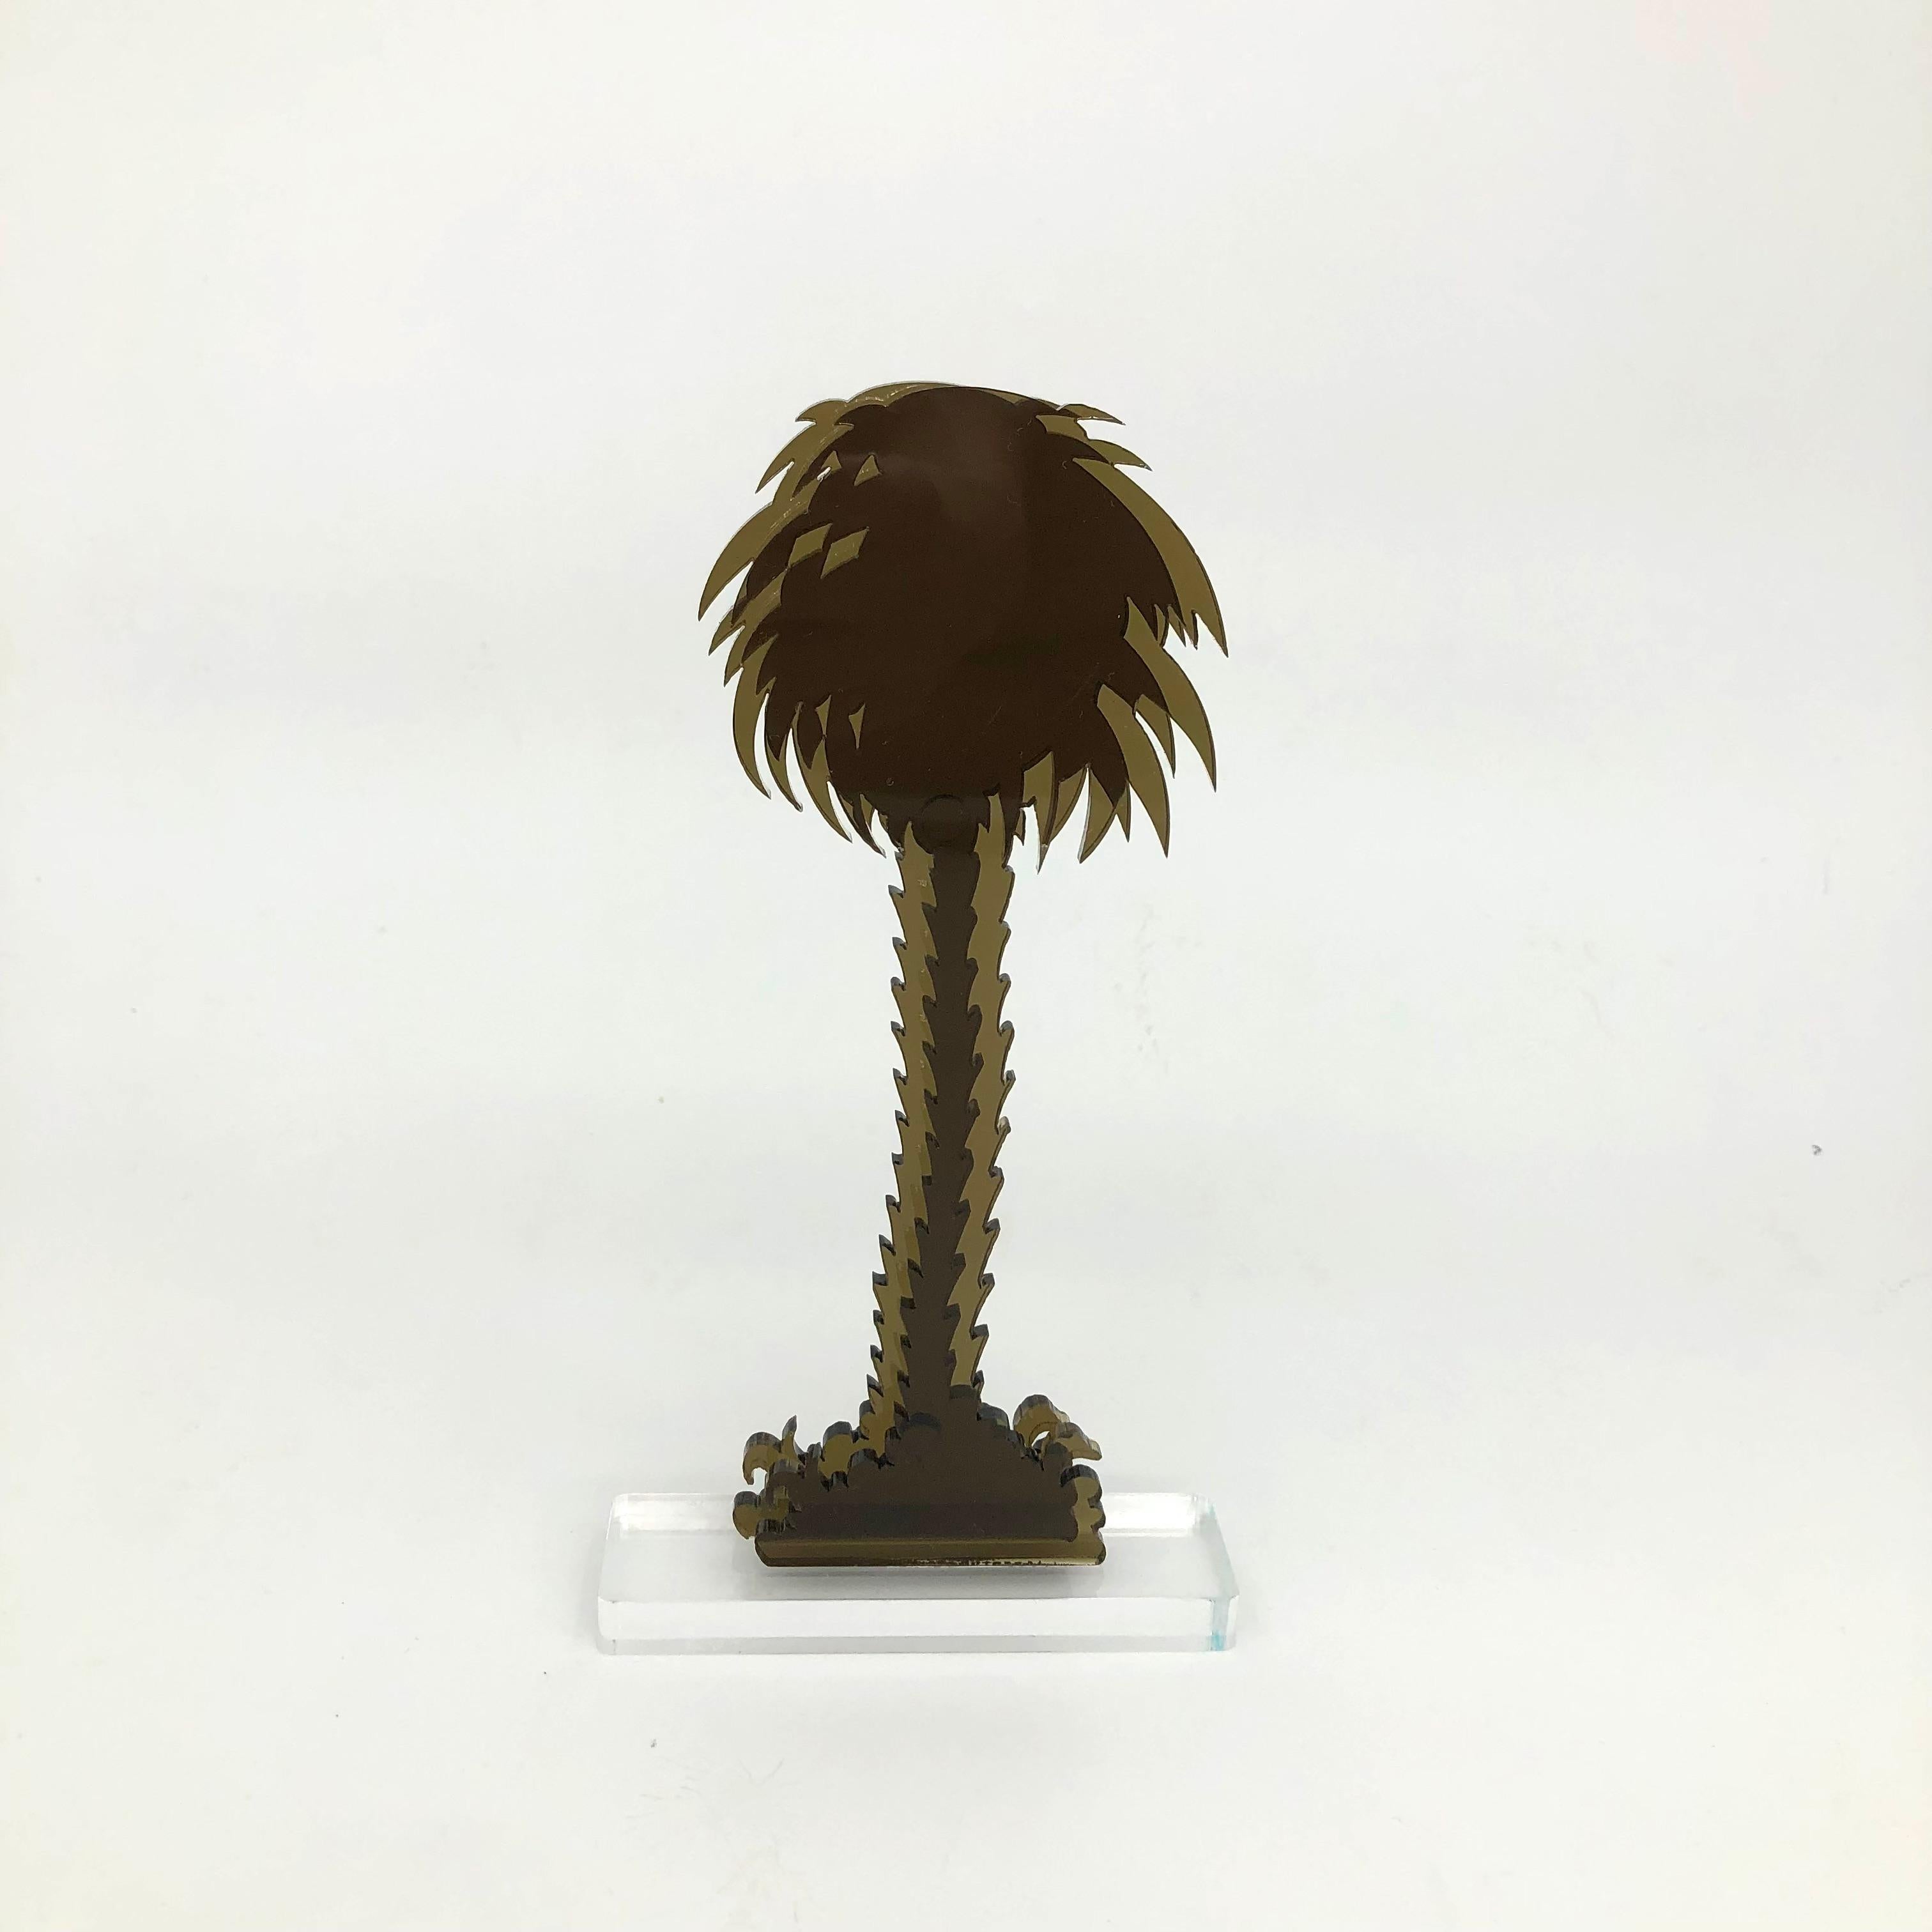 Gino MAROTTA (1935-2012)
Palma artificiale, 2010
Edition Artbeat arrêtée
Sculpture, multiple en méthacrylate coloré bronze et découpé. Signé sur la base.
Haut. 19 cm Longueur : 10 cm

Gino MAROTTA (1935-2012)
Palma artificiale, 2010
Edition Artbeat,